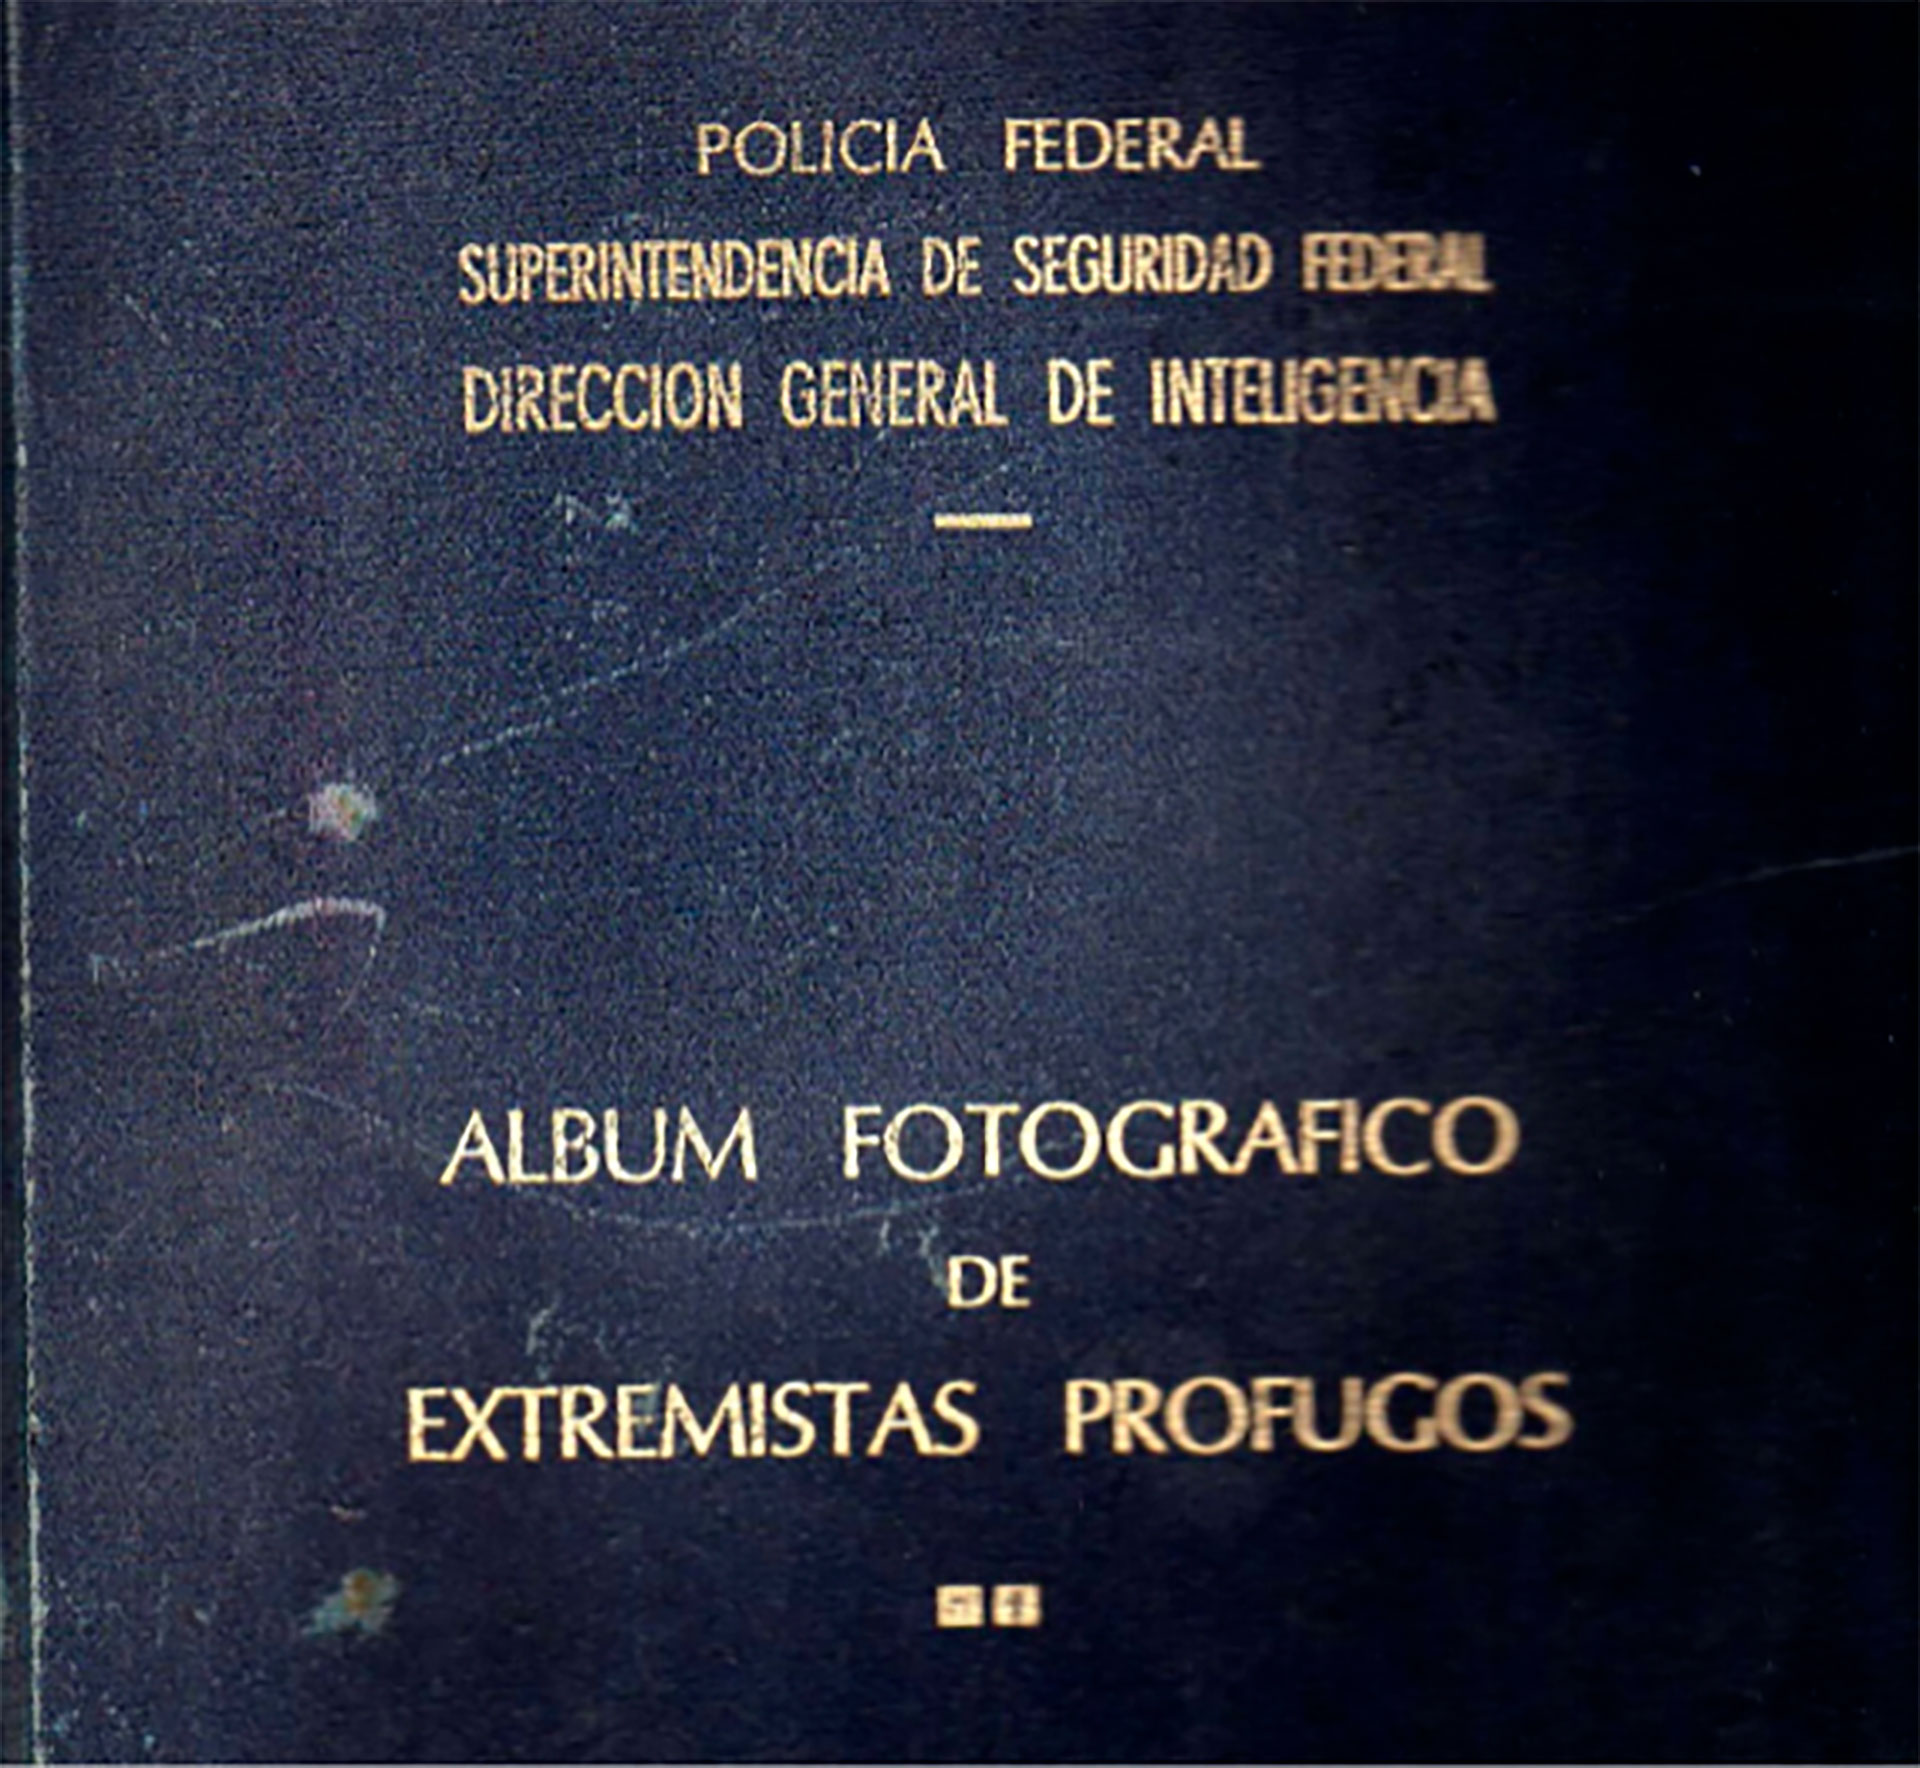 La tapa de la carpeta azul que dice "Policía Federal, Superintendencia de Seguridad Federal. Dirección General de Inteligencia” y que Perón le pidió a Villar que se la entregara